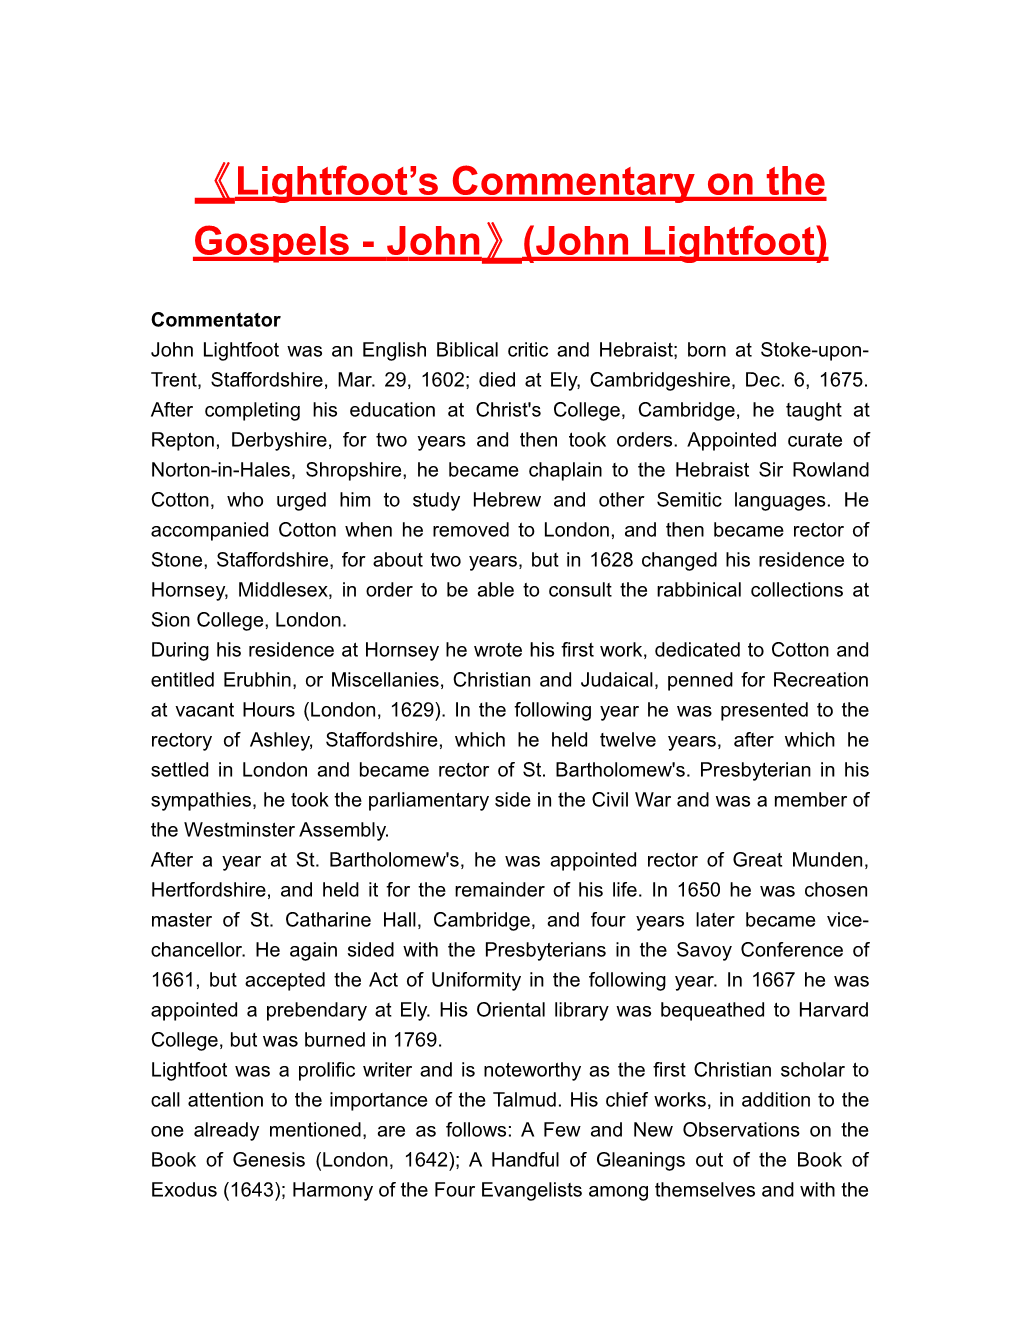 Lightfoot S Commentary on the Gospels - John (John Lightfoot)